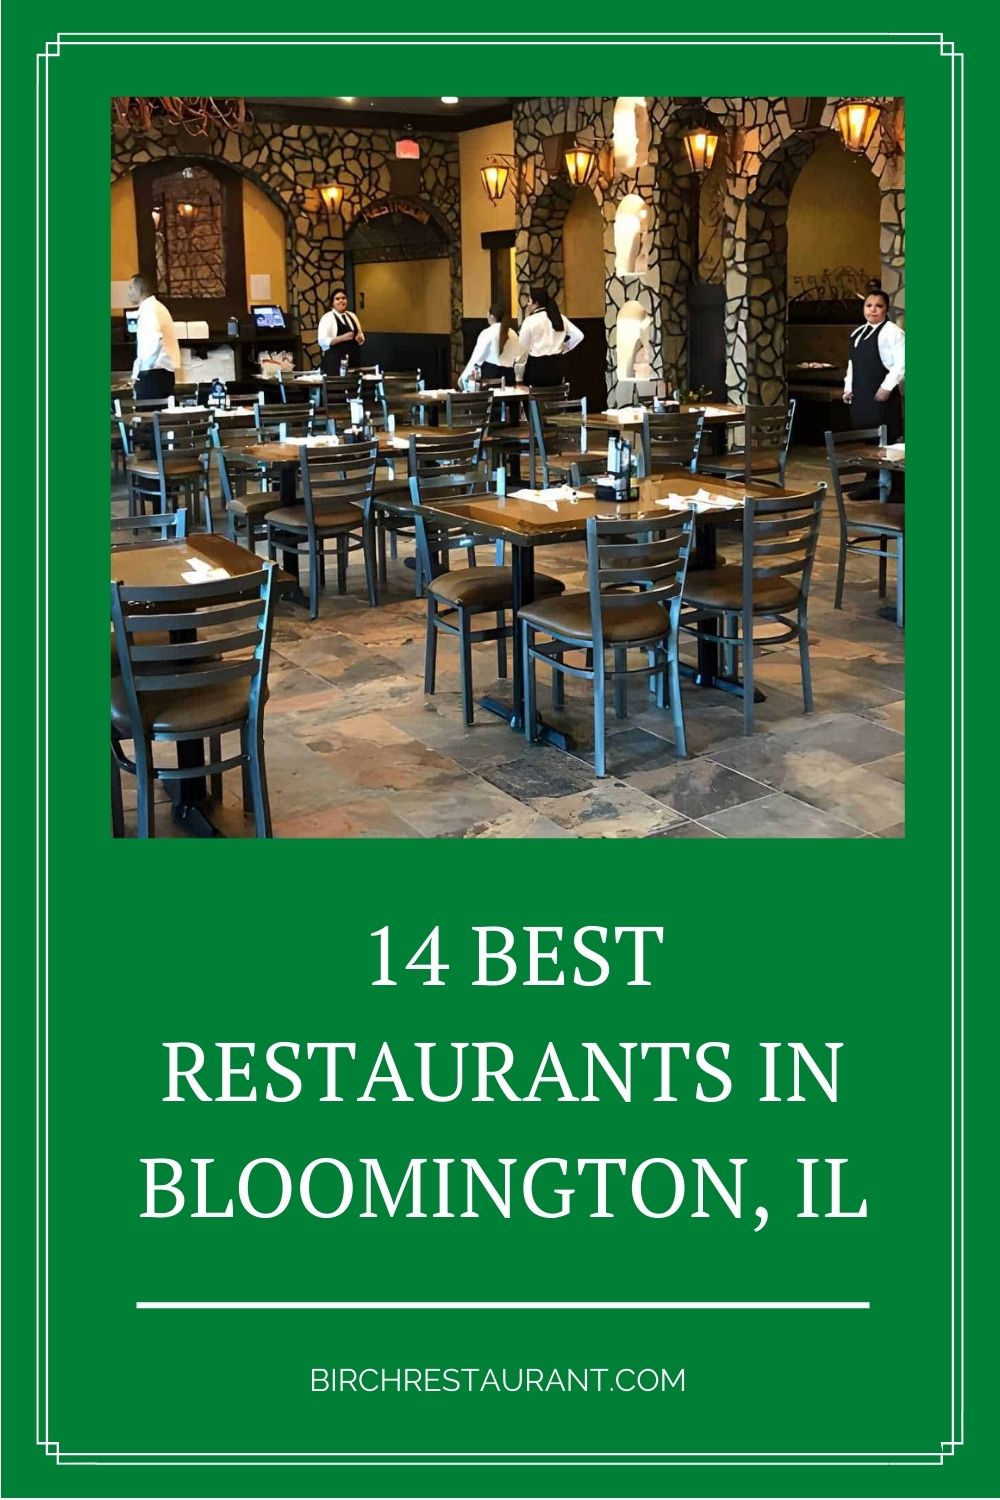 Best Restaurants in Bloomington